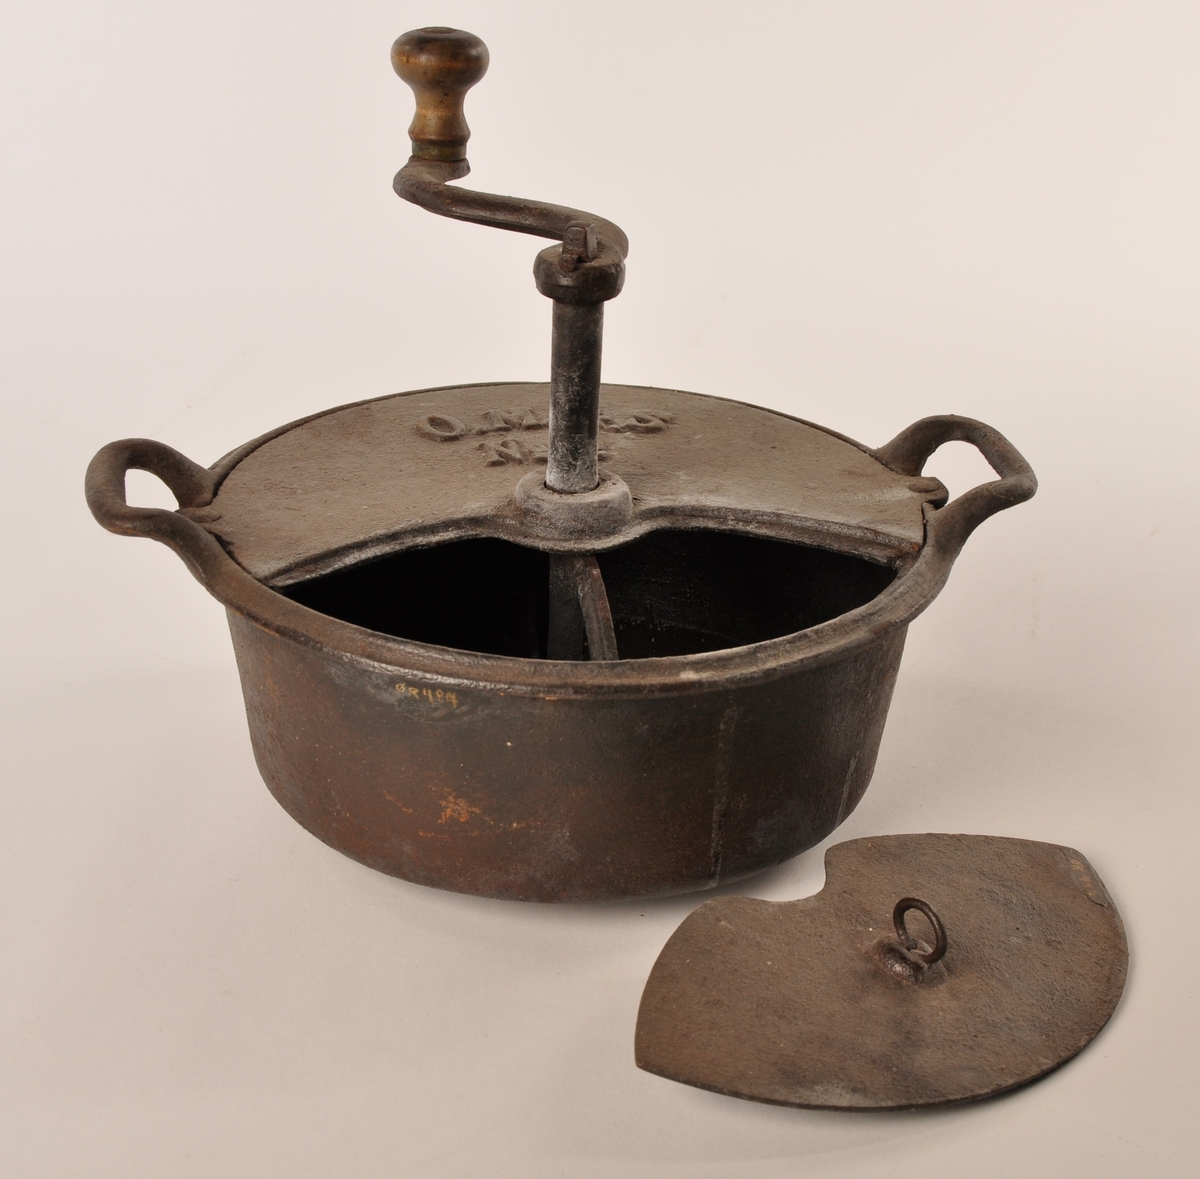 Rund kaffebrenner av jern med to hanker og delvis avtagbart lokk, sveiv i jern med trehåndtak. På lokket O. M. &. S No 2